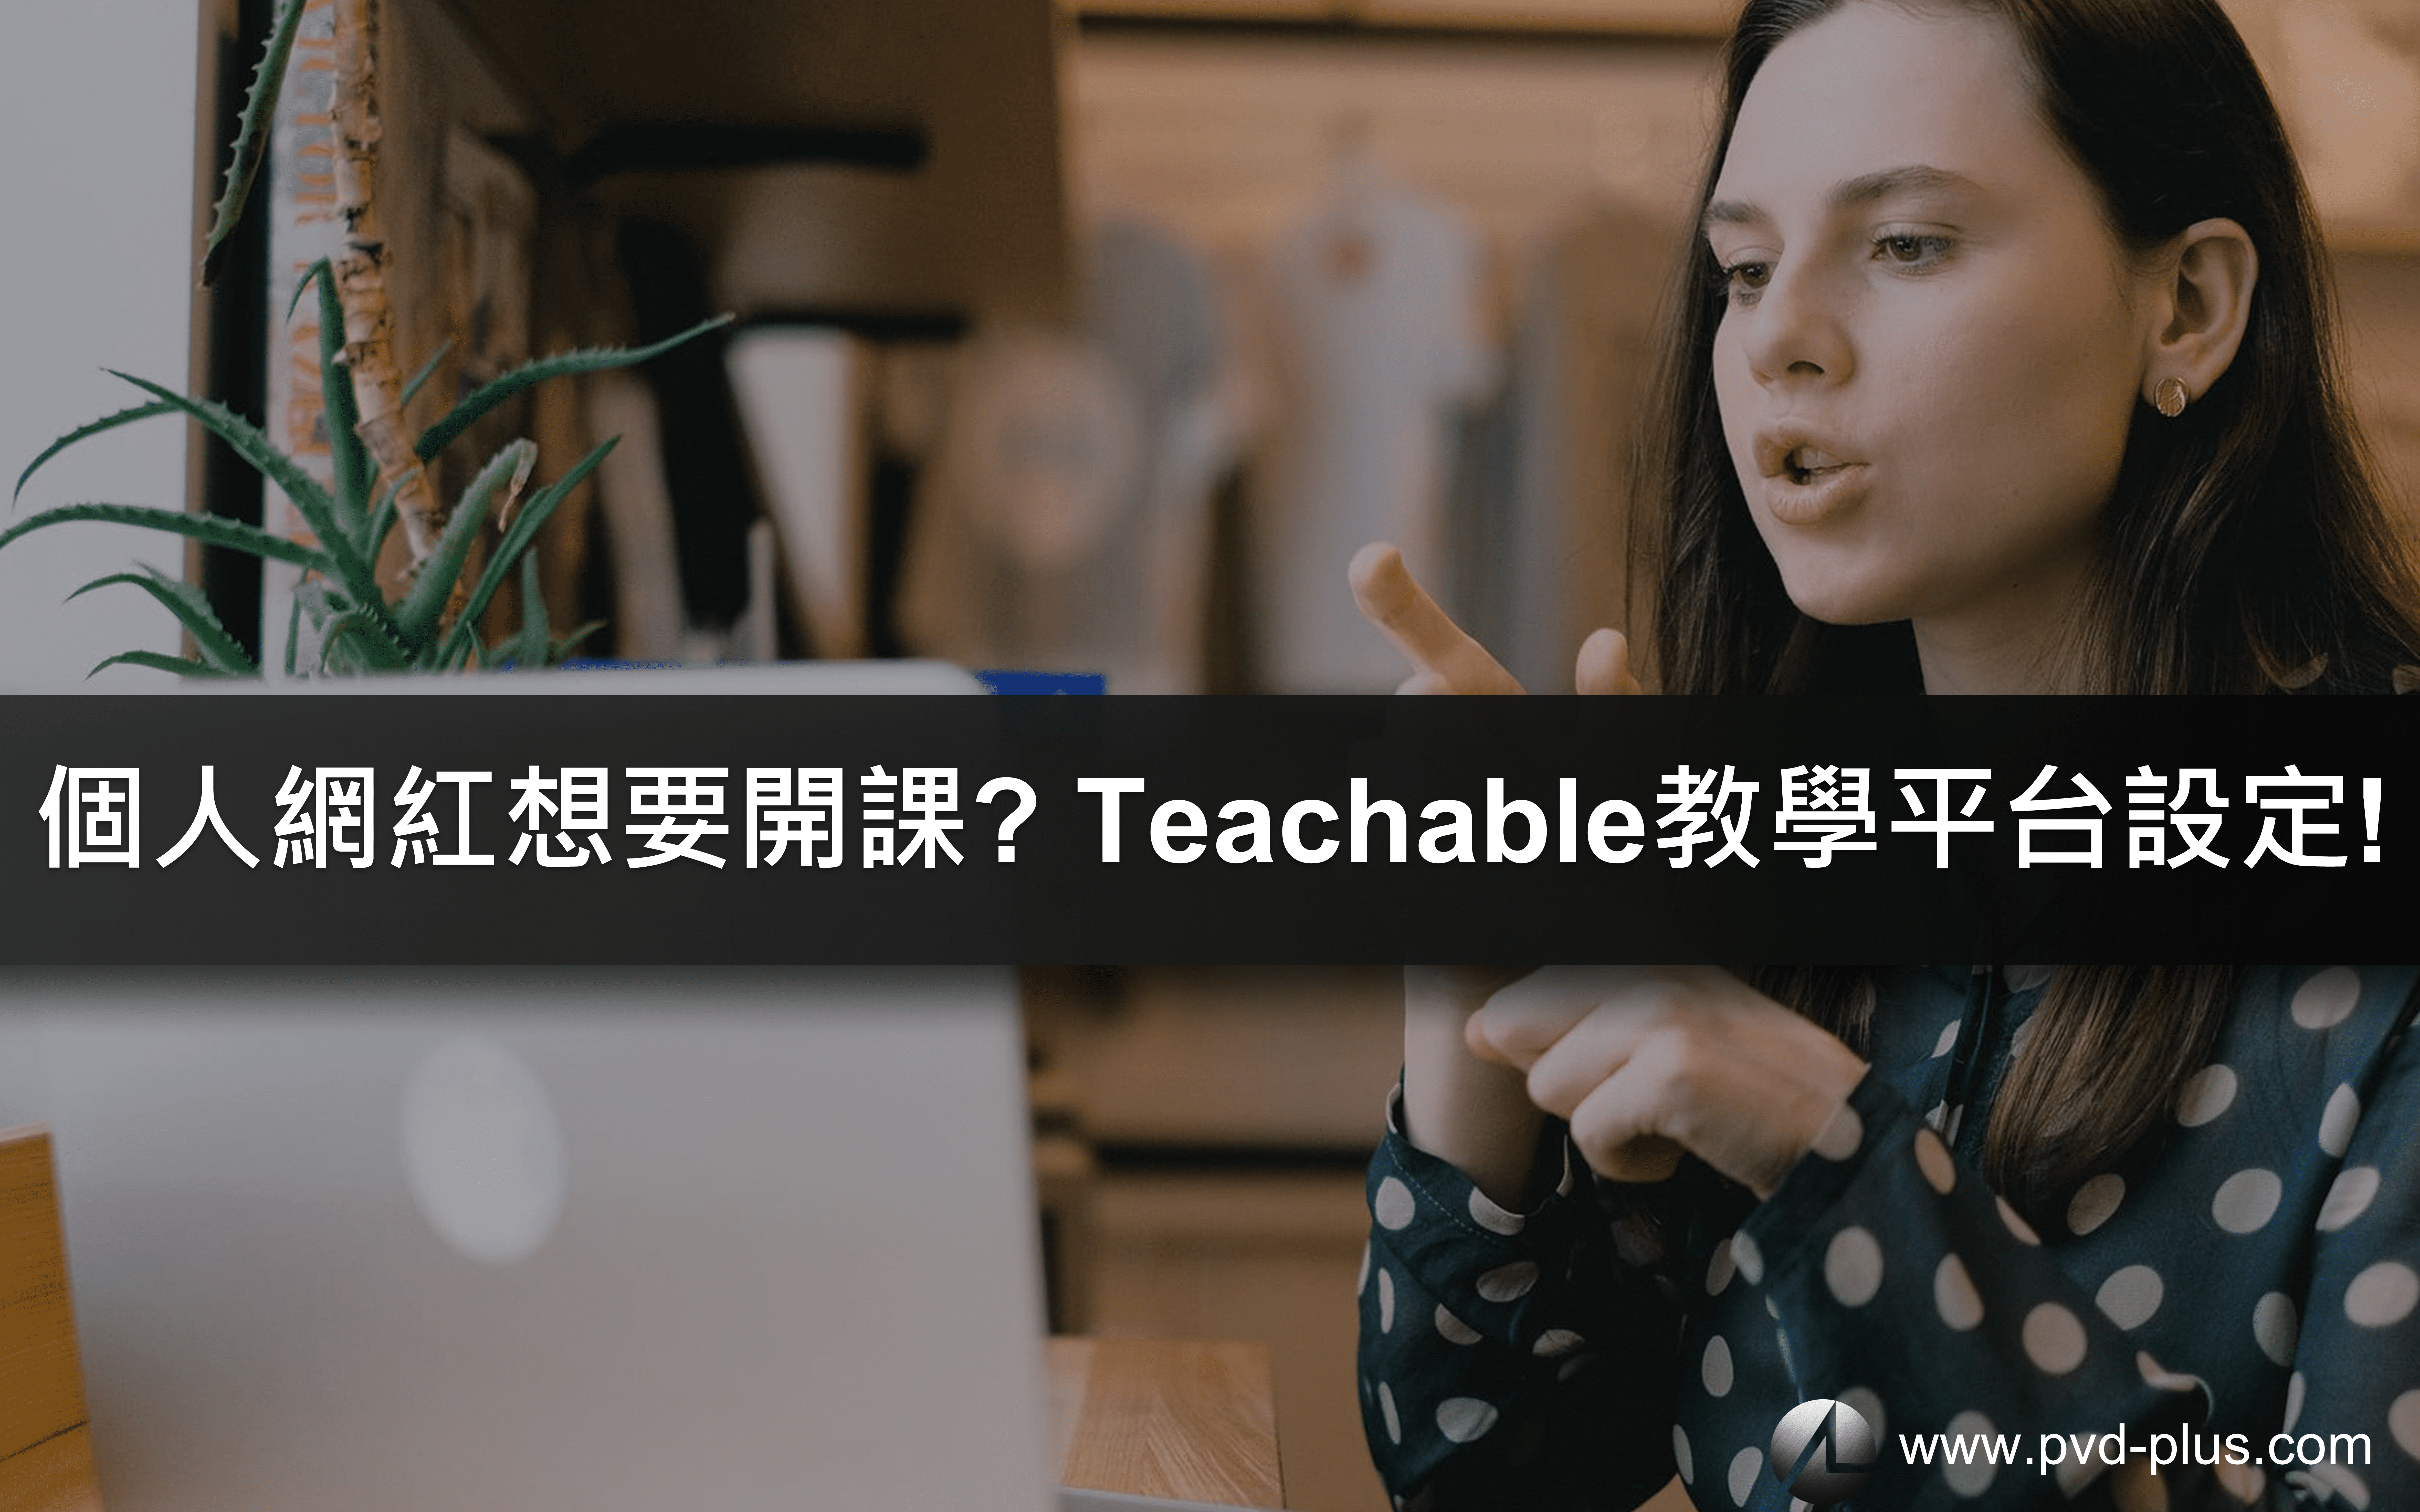 網紅如何自己開課? 自己架設線上課平台 Teachable 打造專屬的自媒體培訓網站！